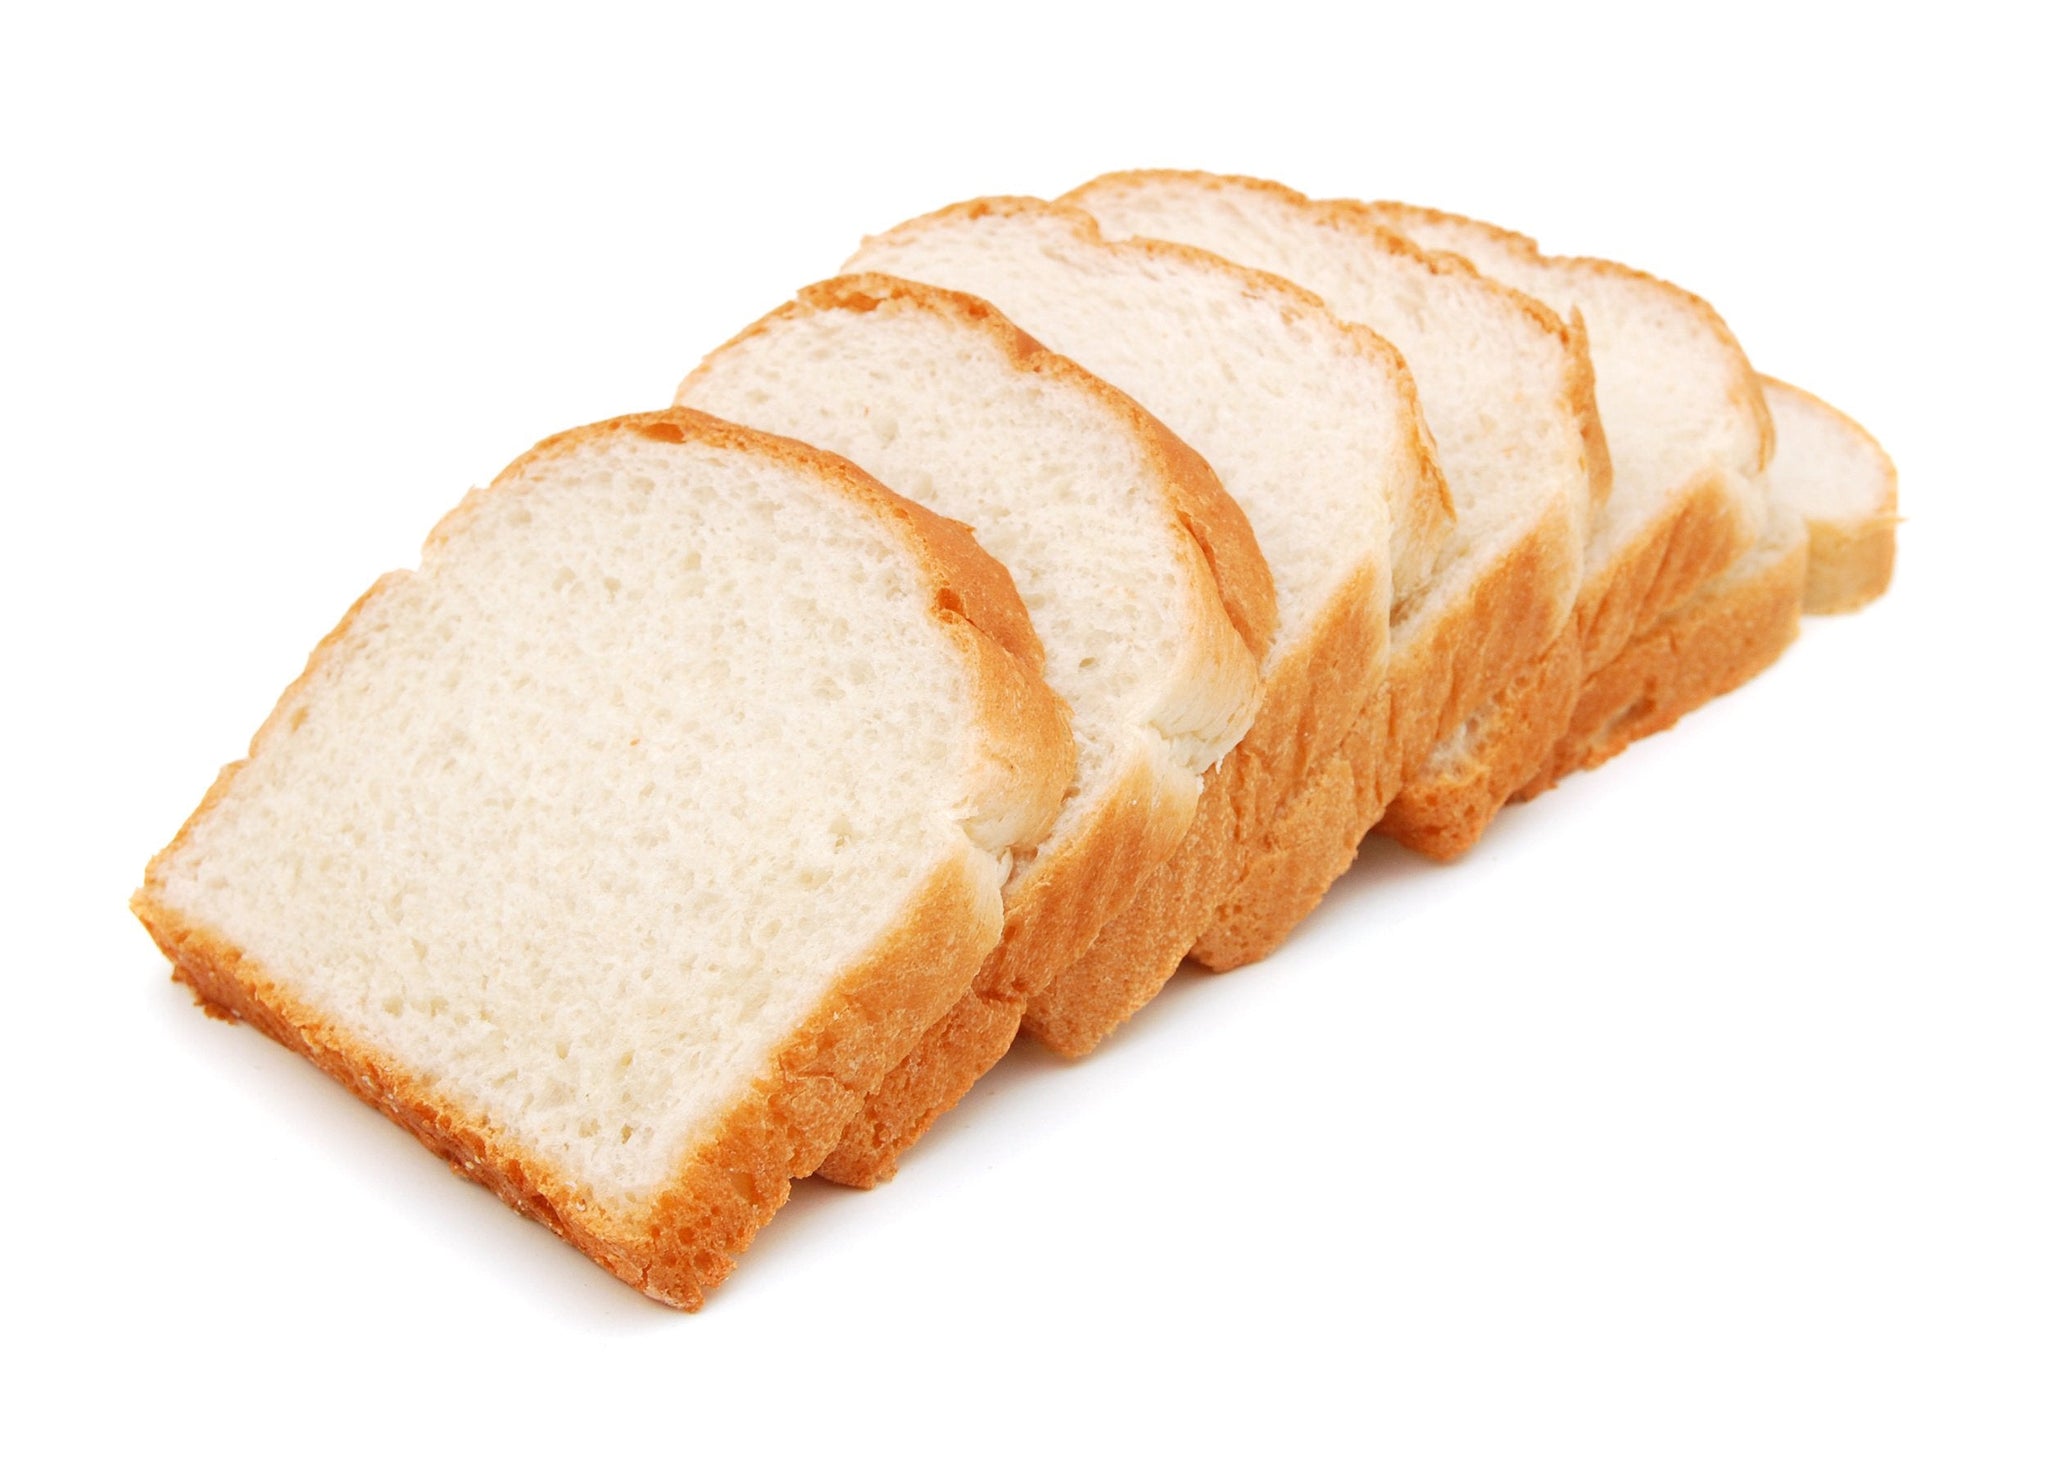 aba>Wonder or Special Blend White Bread (sliced) - 1 loaf